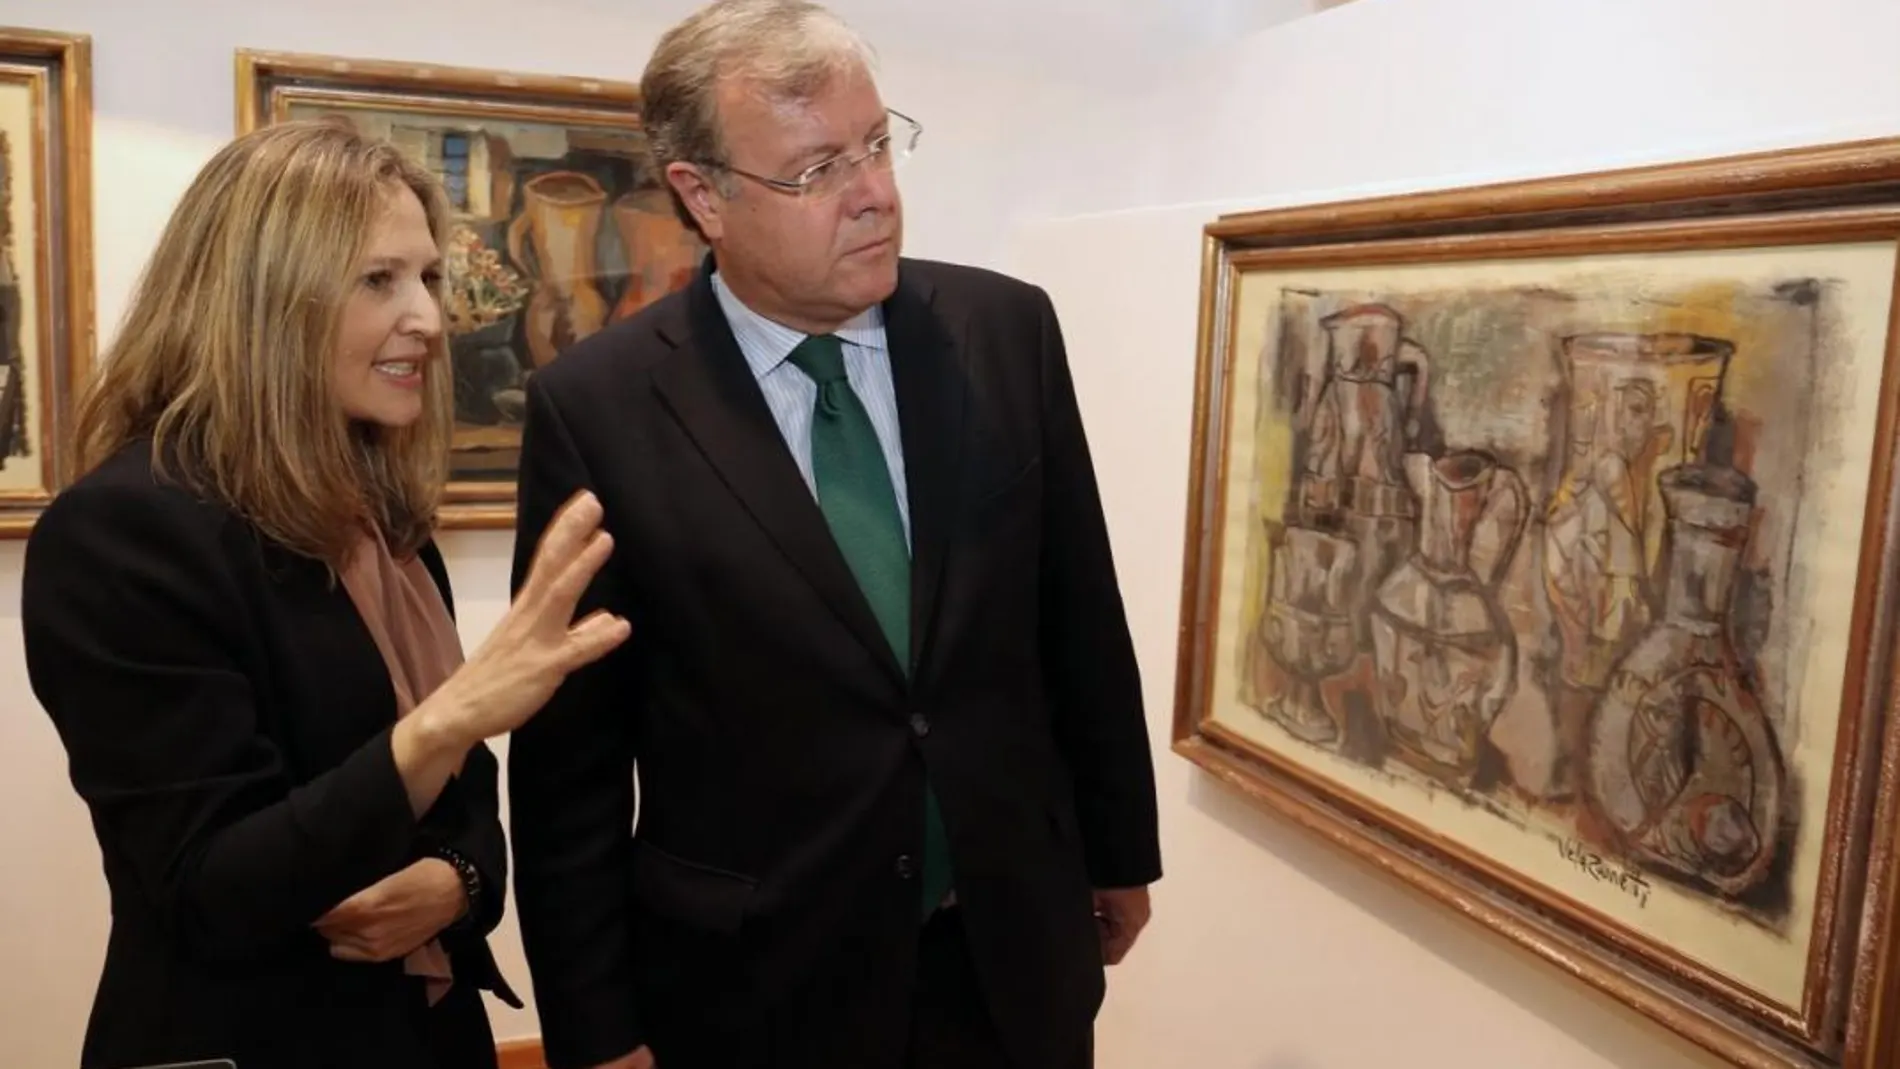 El alcalde de León, Antonio Silván, y la responsable de Patrimonio Artístico de Paradores, María Gimeno, inauguran la exposición ‘Vela Zanetti en la colección de Paradores